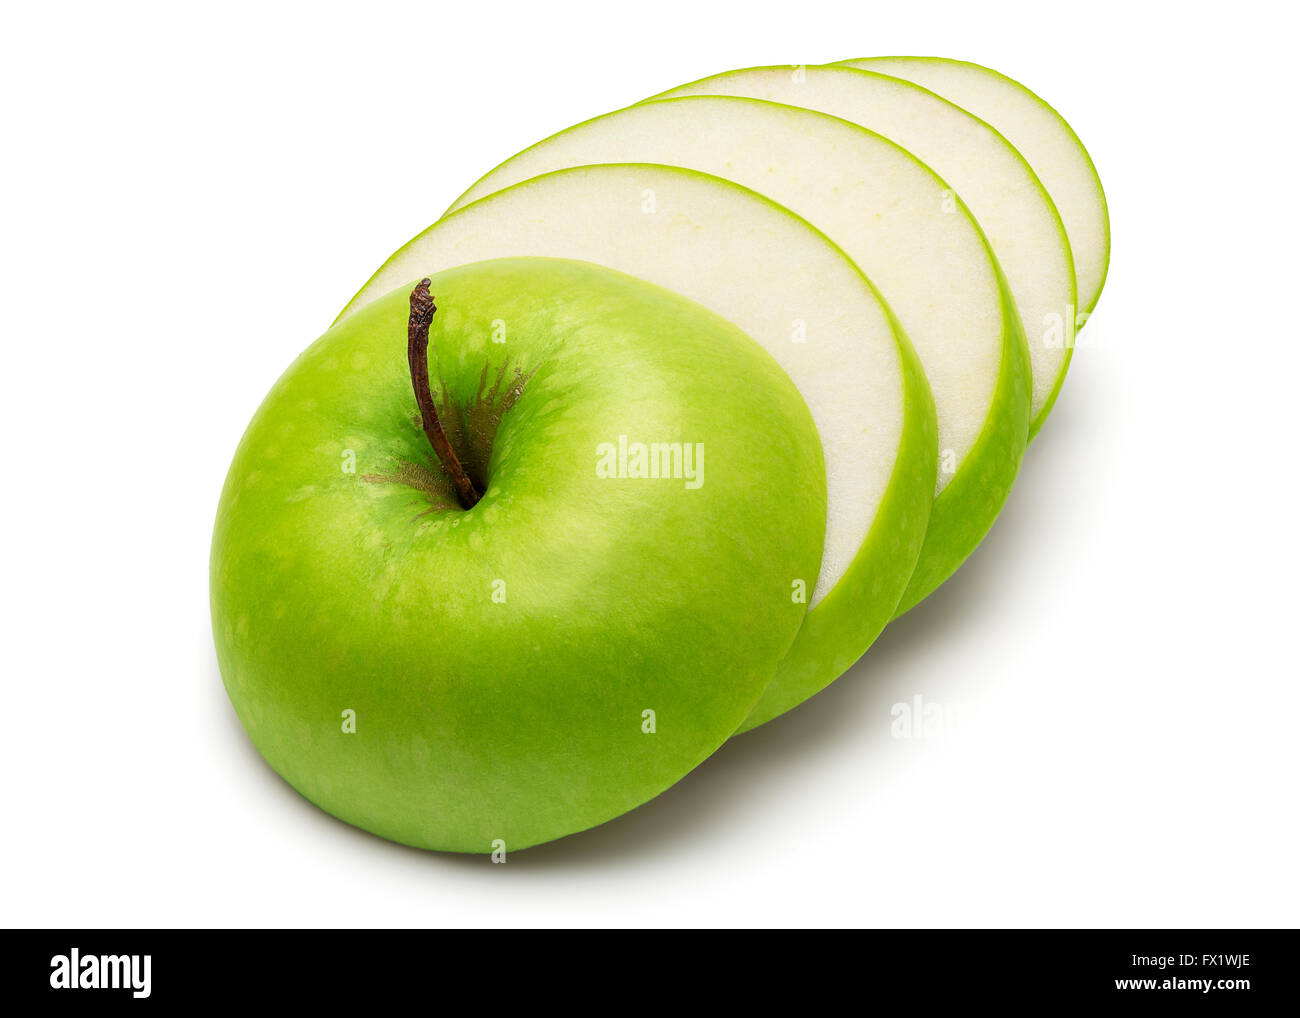 https://c8.alamy.com/comp/FX1WJE/sliced-fresh-green-apple-isolated-on-white-background-in-full-depth-FX1WJE.jpg